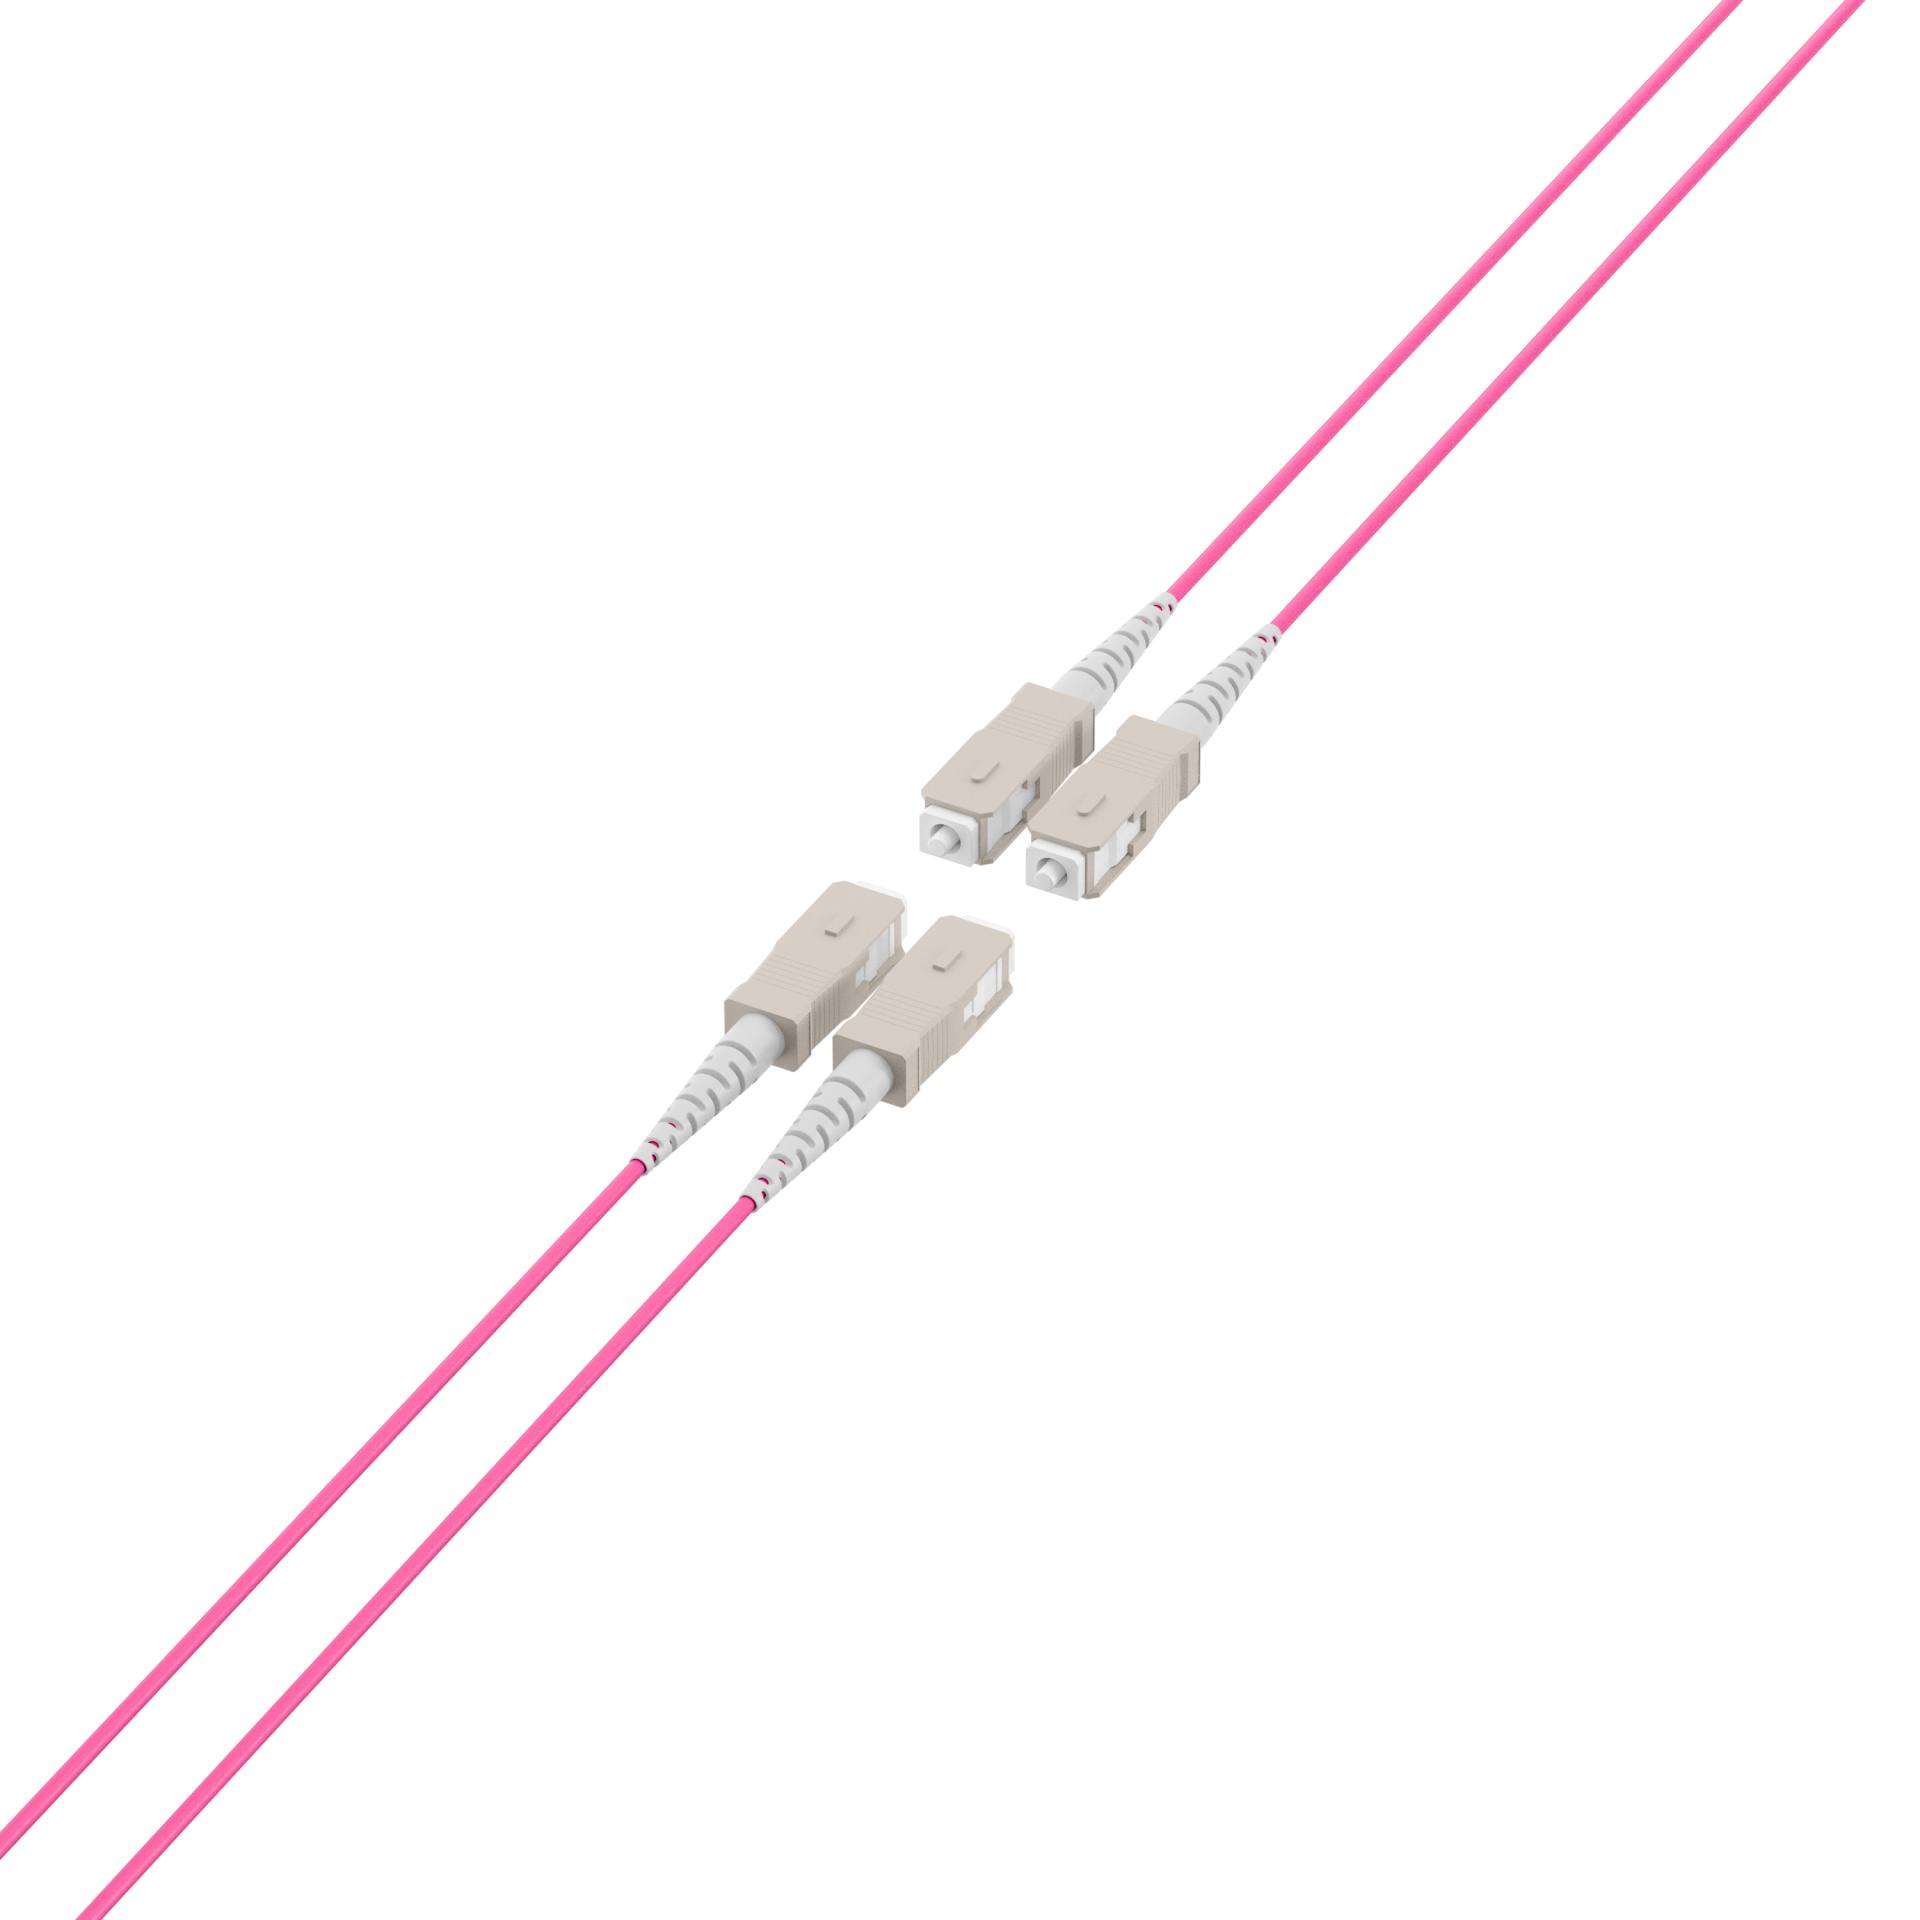 Trunk cable U-DQ(ZN)BH OM4 4G (1x4) SC-SC,90m Dca LSZH